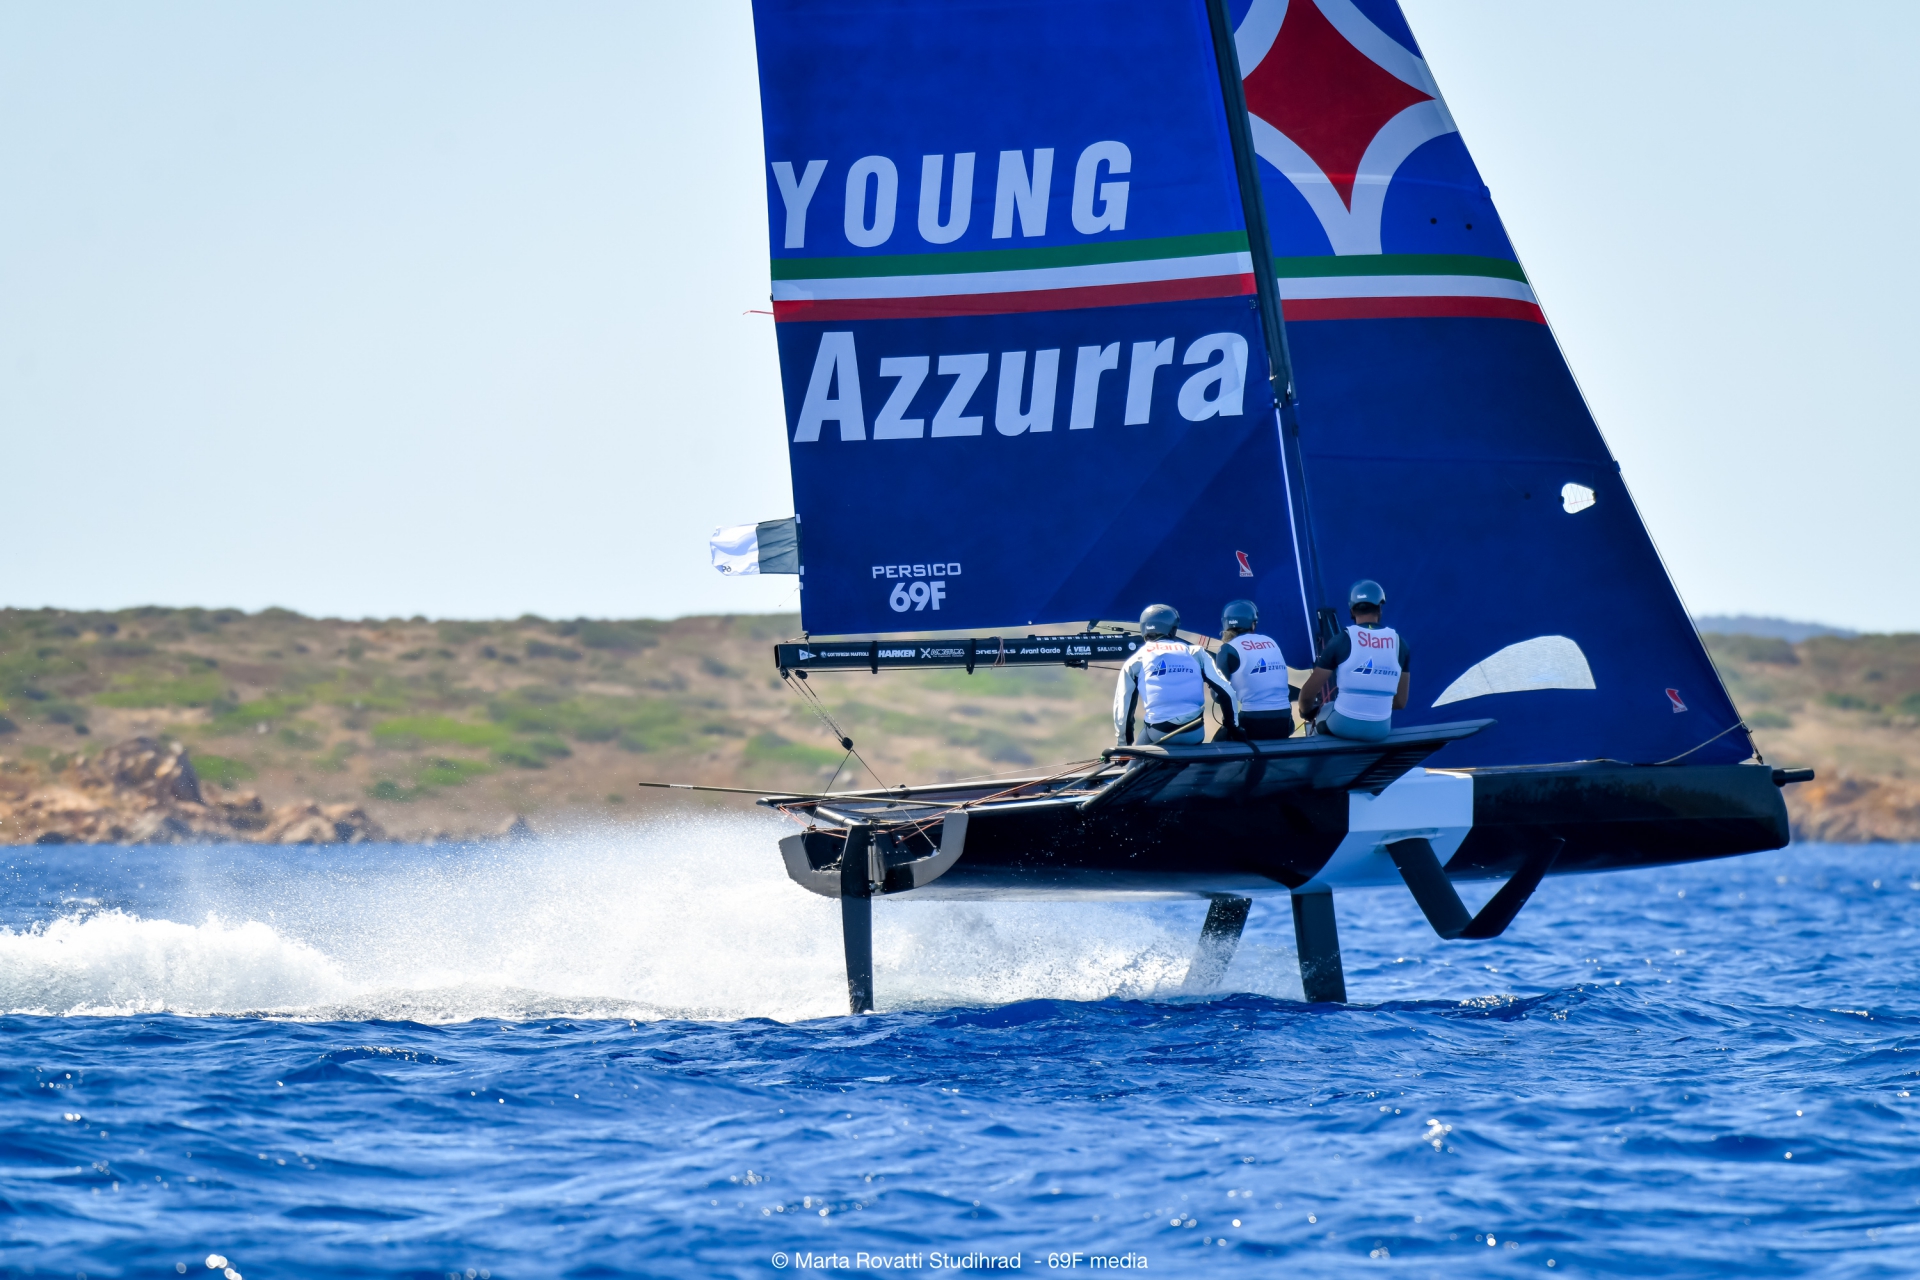 Young Azzurra vince il Persico 69F Grand Prix 2.1 - Comunicati Stampa - Yacht Club Costa Smeralda